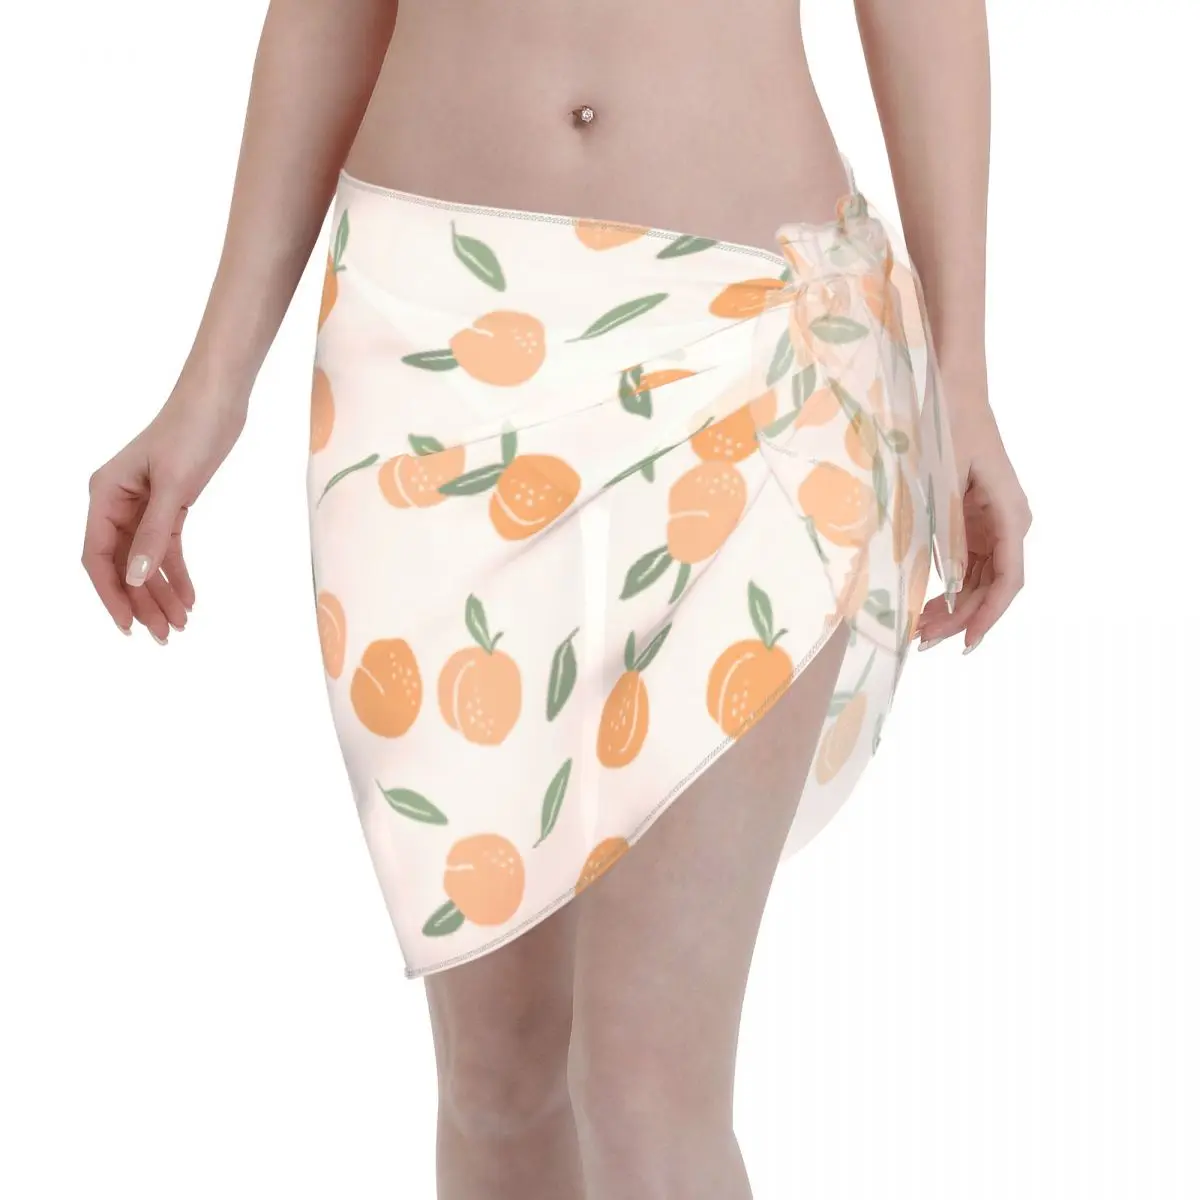 

Peach Swimwear Pareo Scarf Cover Ups Women Fruit Sheer Ladies Skirt Bikini Cover-Up Sarong